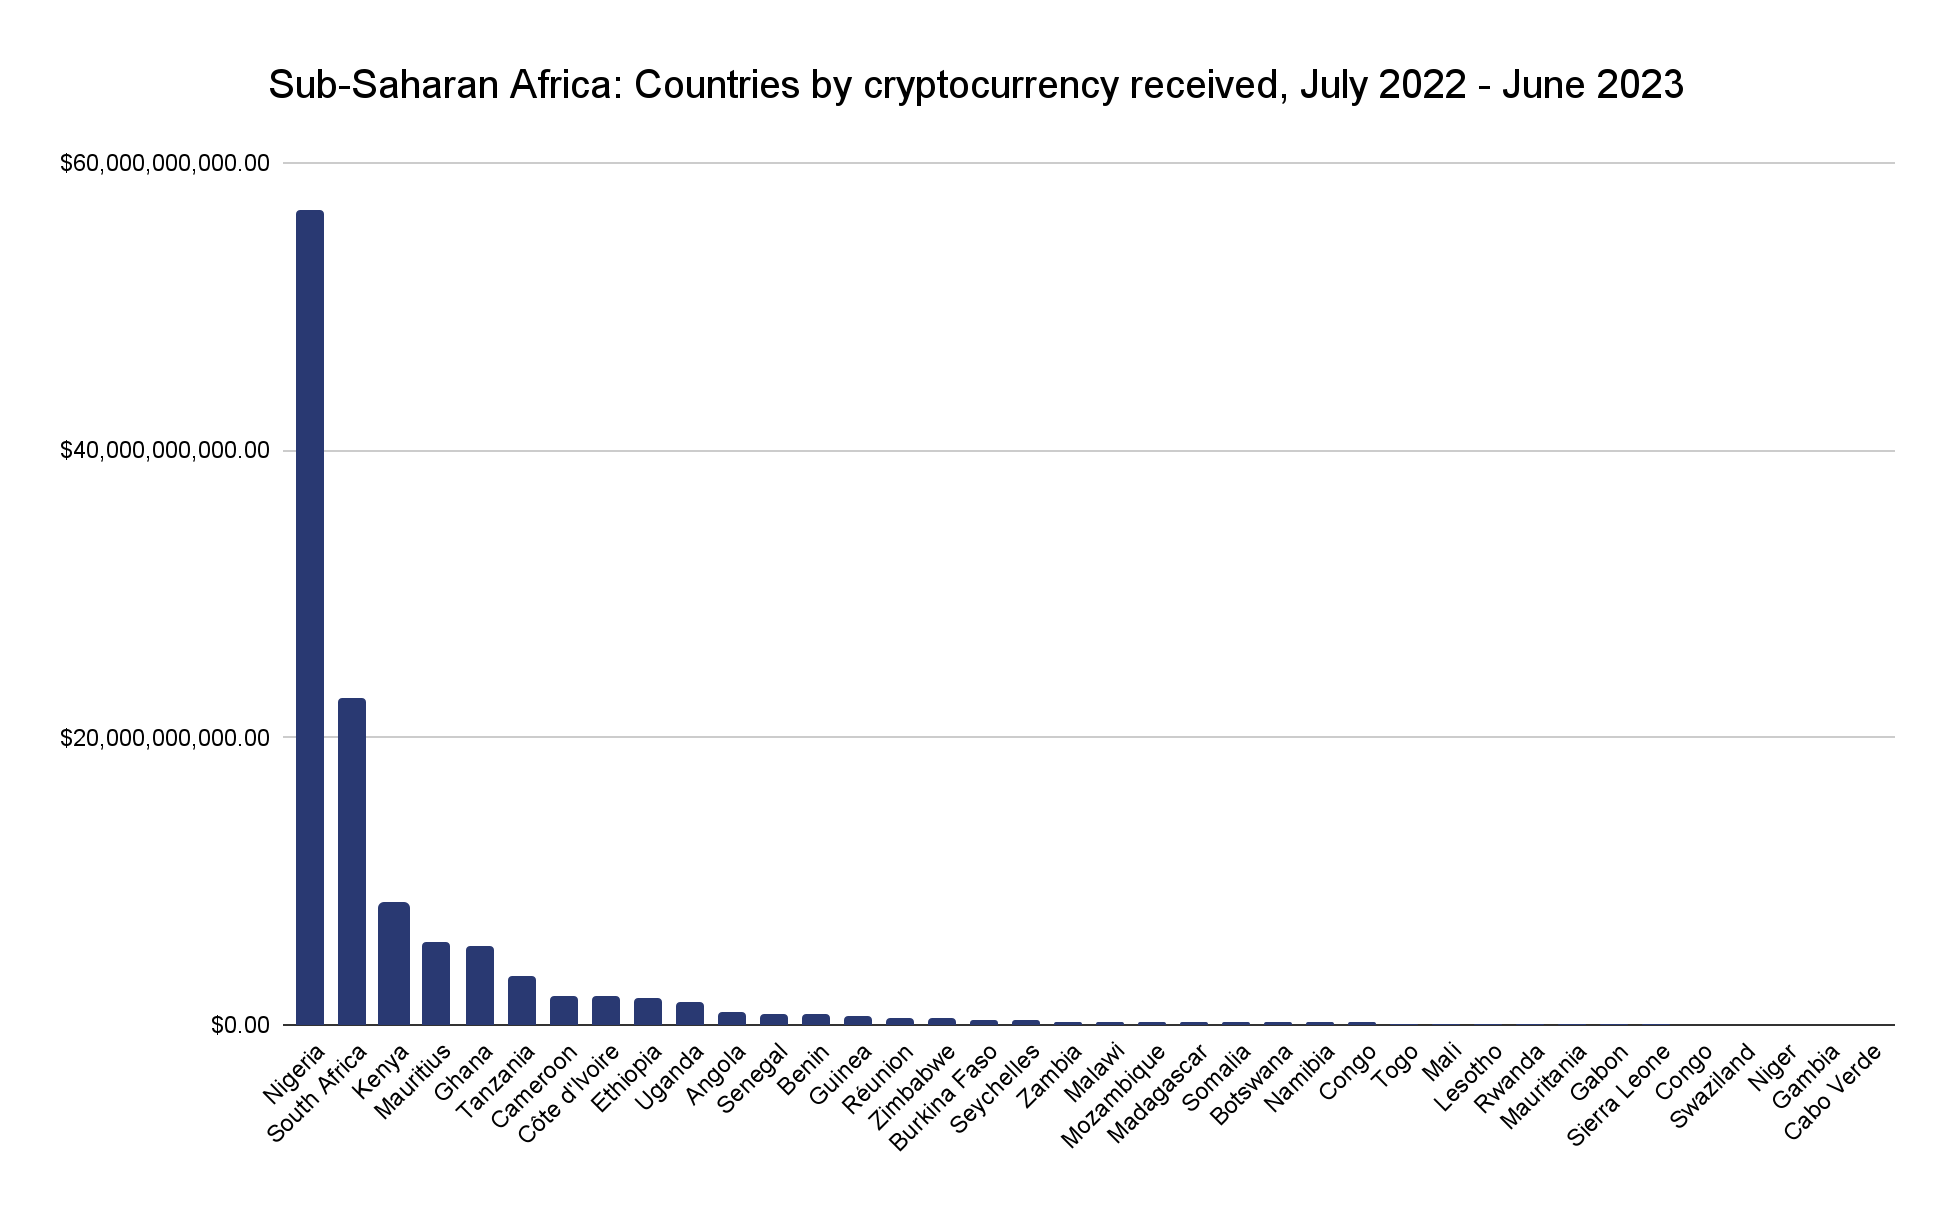 Afrika Sub-Sahara berbondong-bondong menggunakan kripto sebagai lindung nilai inflasi - 2